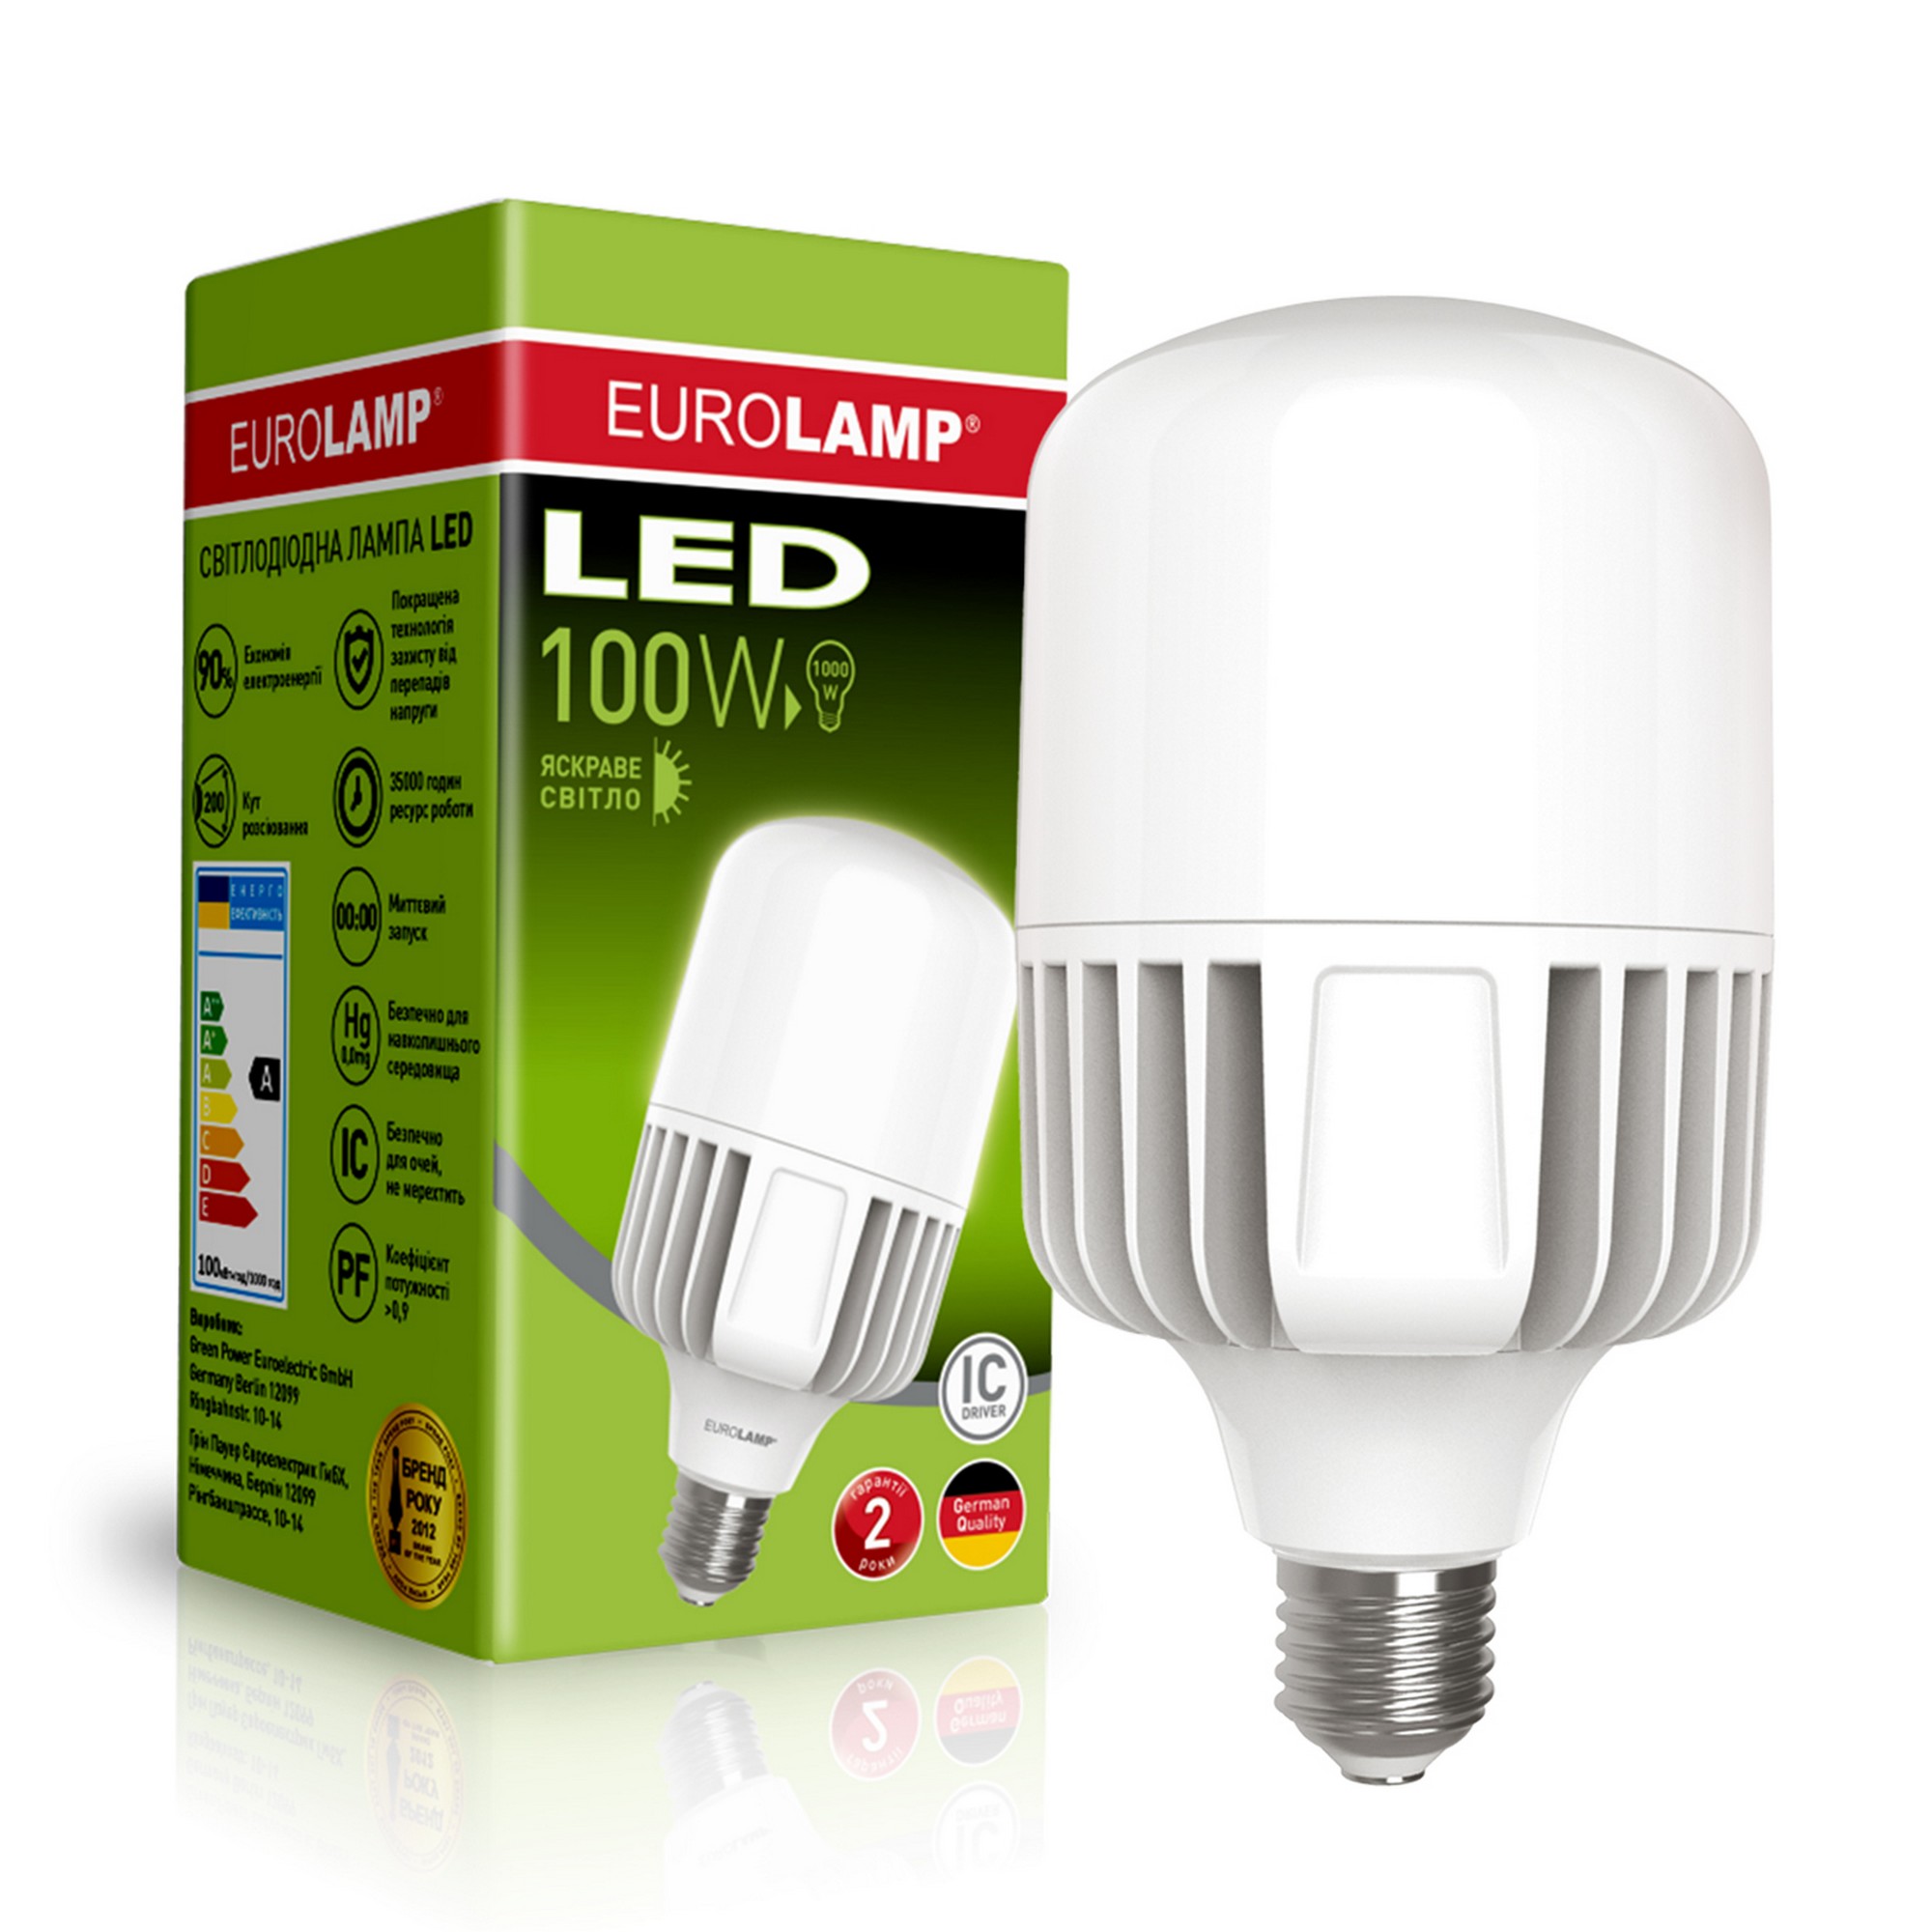 Eurolamp LED 100W E40 5000K